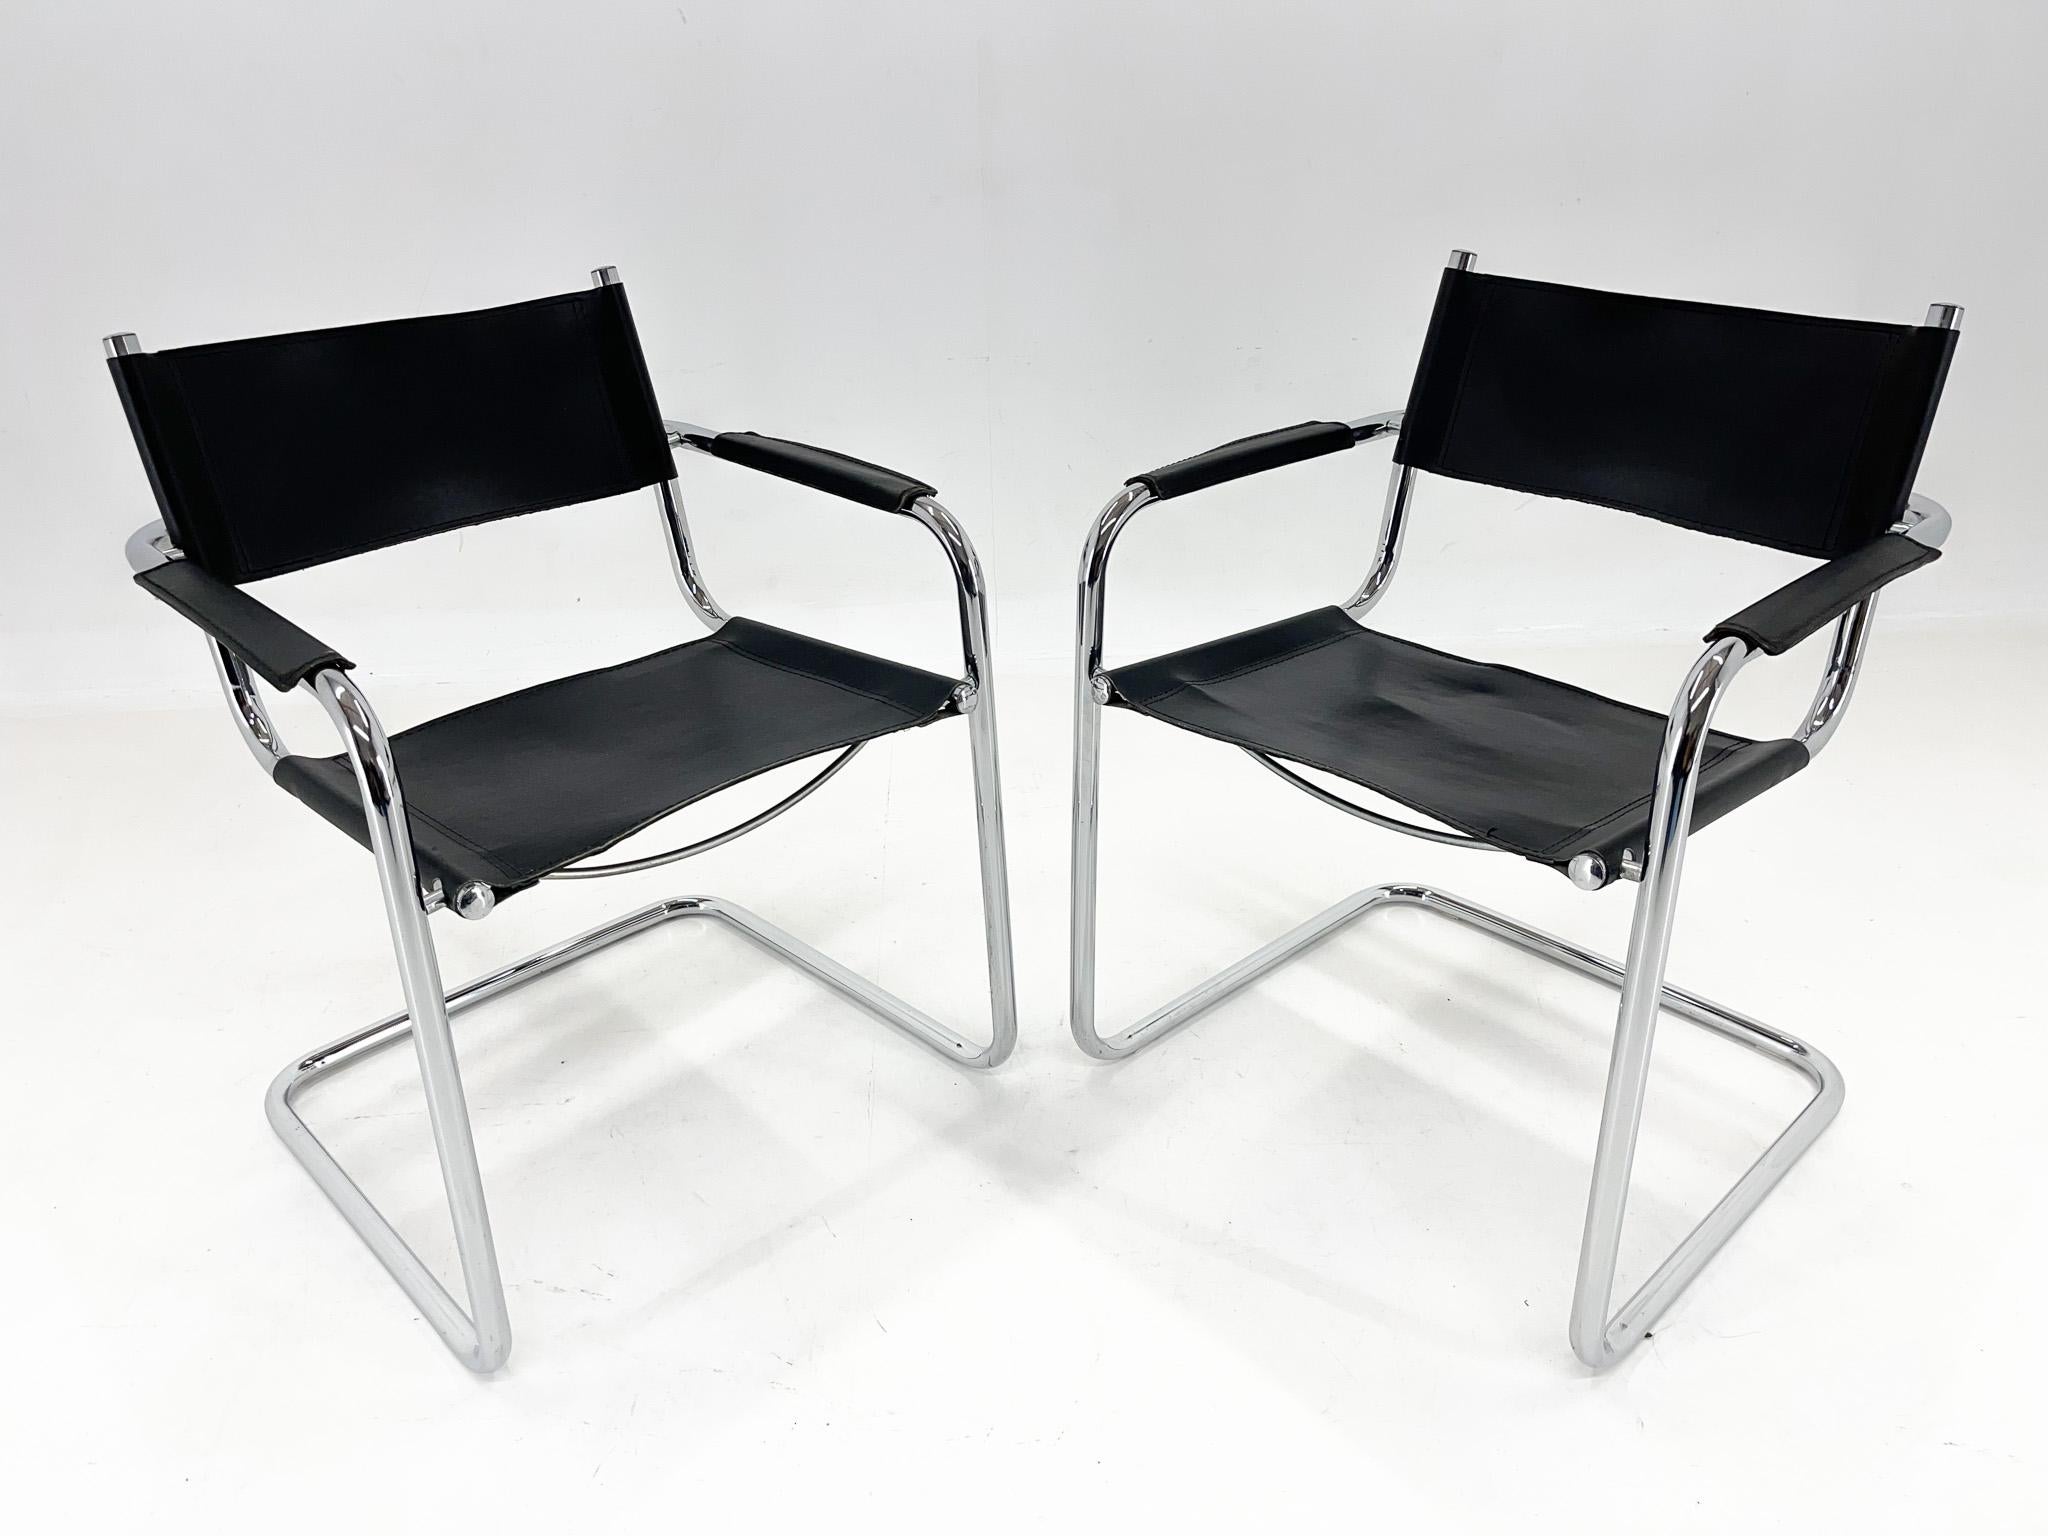 Deux chaises en cuir et chrome de Mart Stam. Le chrome est en très bon état. Le cuir a quelques soupirs d'usage. Toutes les imperfections sont visibles sur les photos. La hauteur du siège est de 47 cm et celle des accoudoirs de 63 cm.